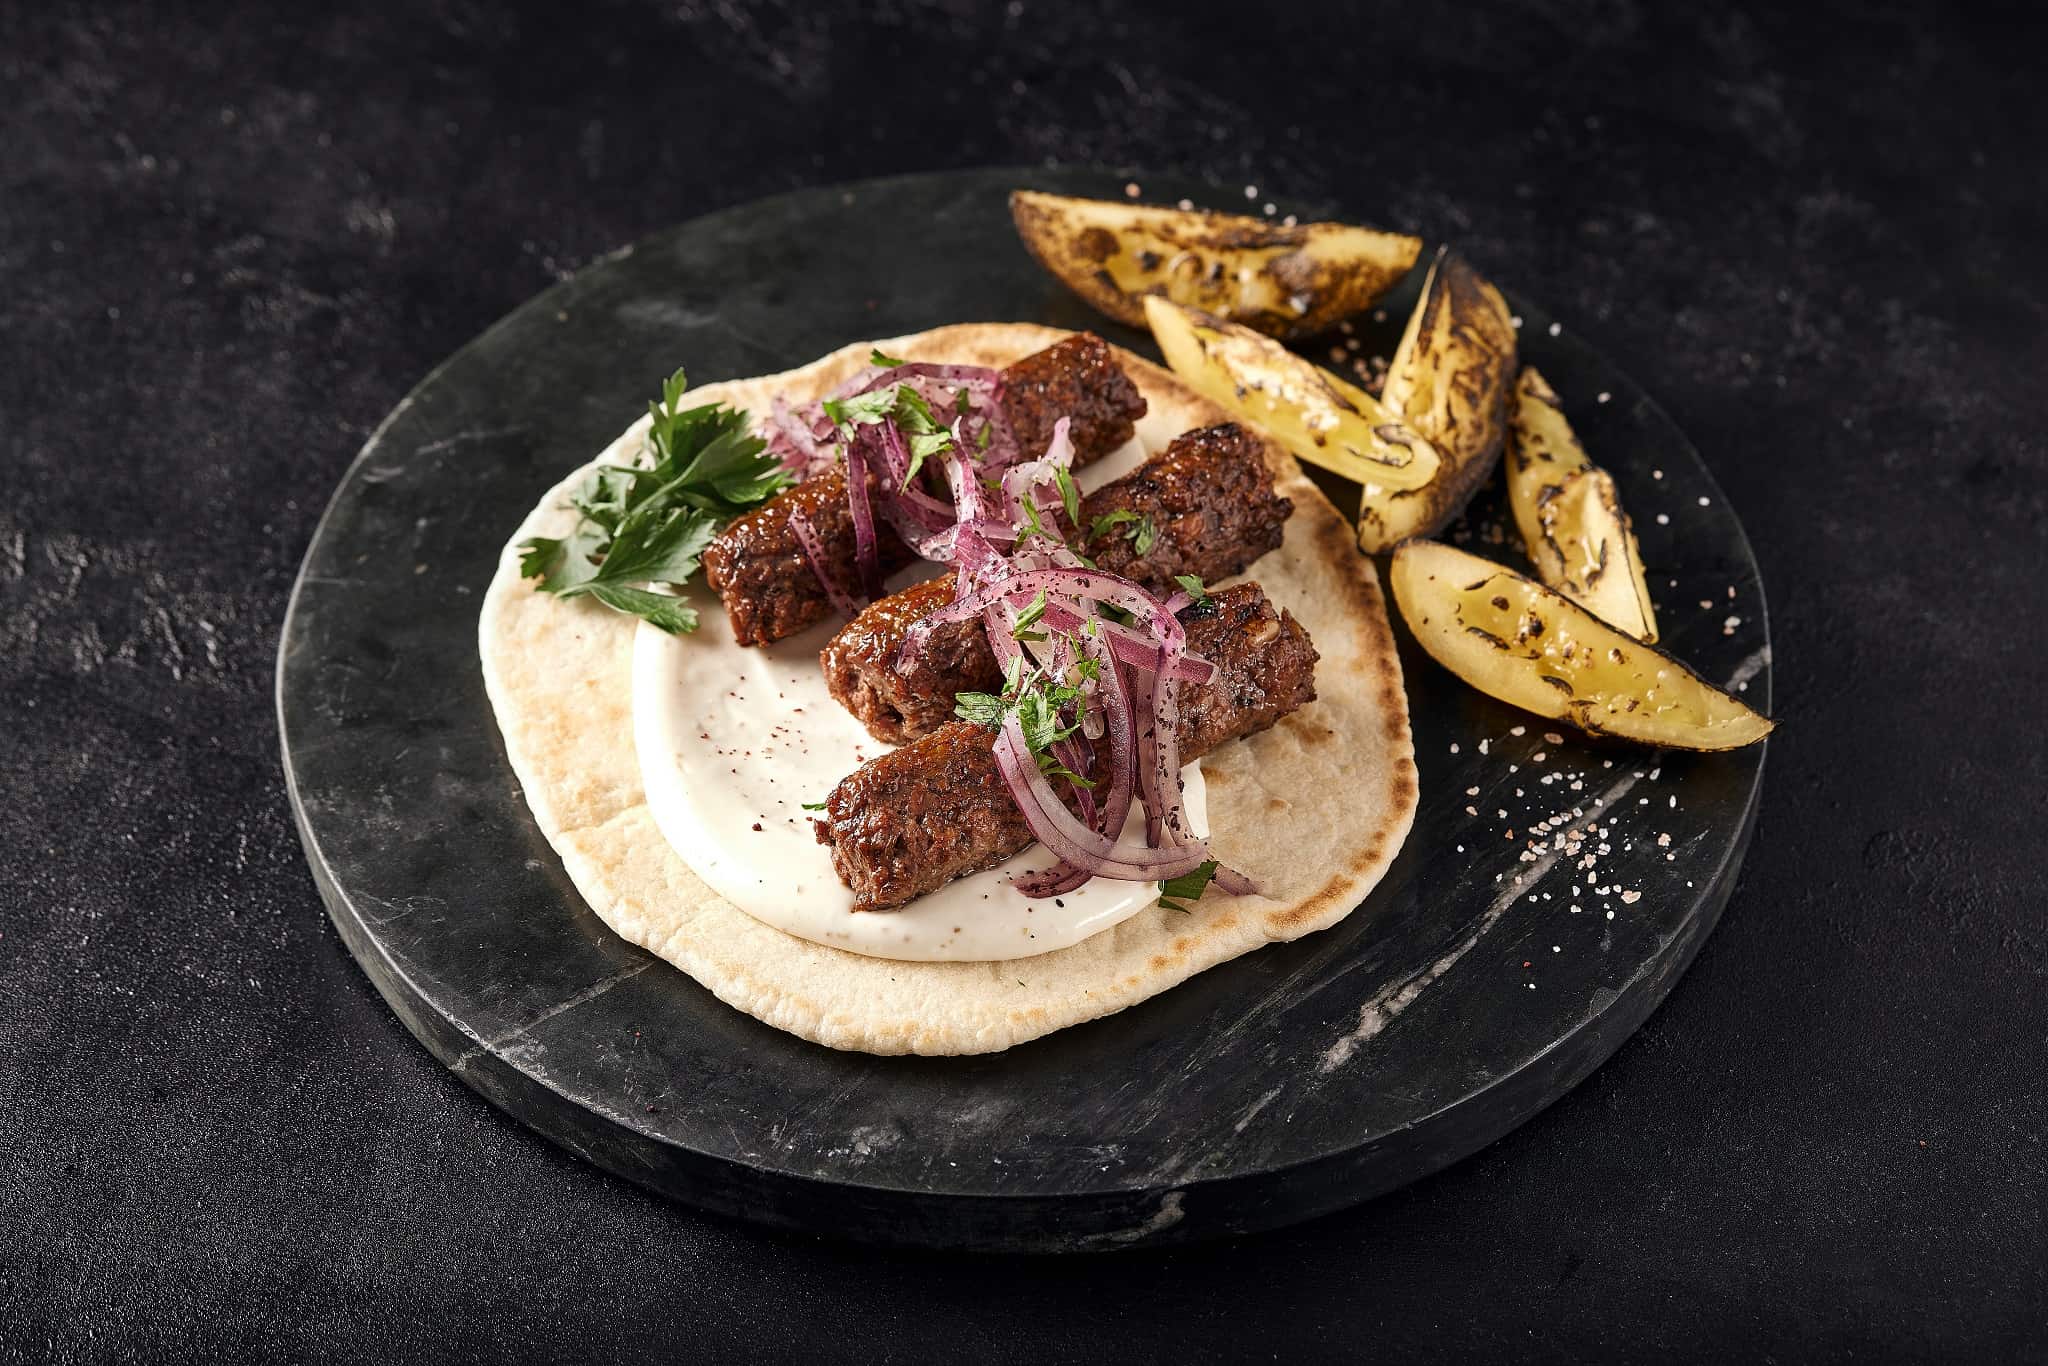 redefine meat, new meat 3d geprint vlees plantaardig vlees vleesvervanger kebab